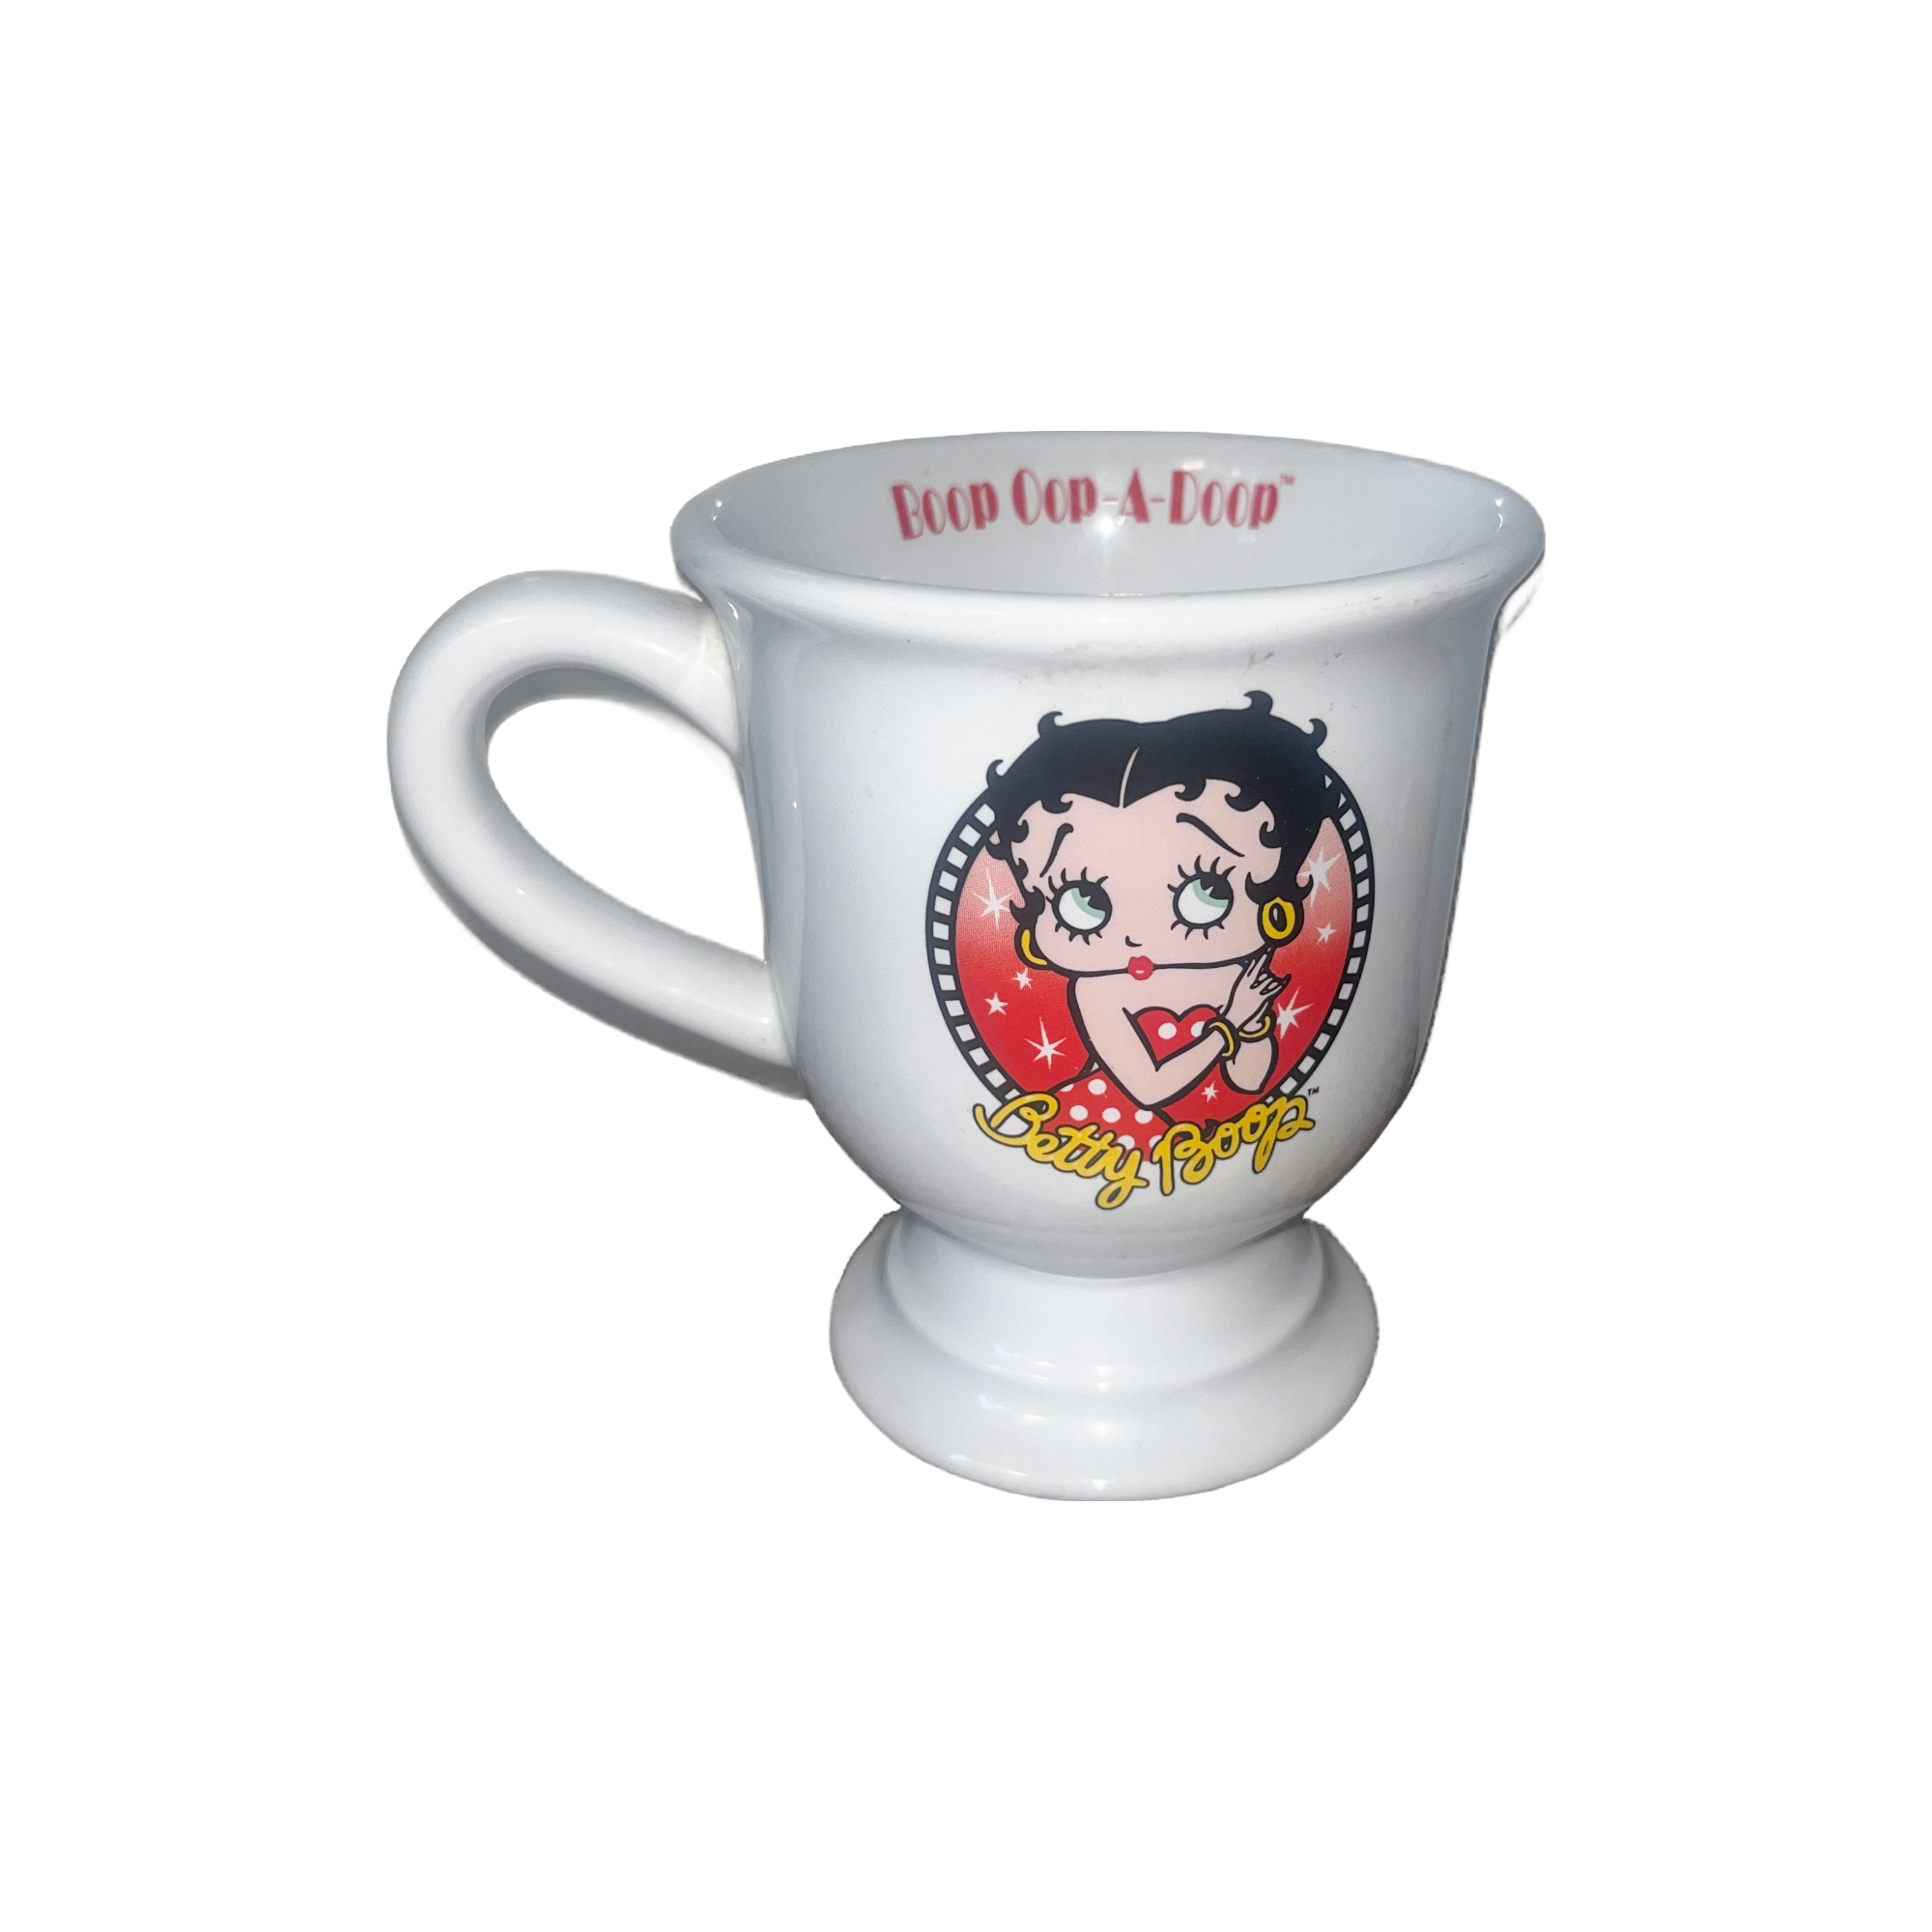 Vintage betty Boop Coffee/Tea Mug